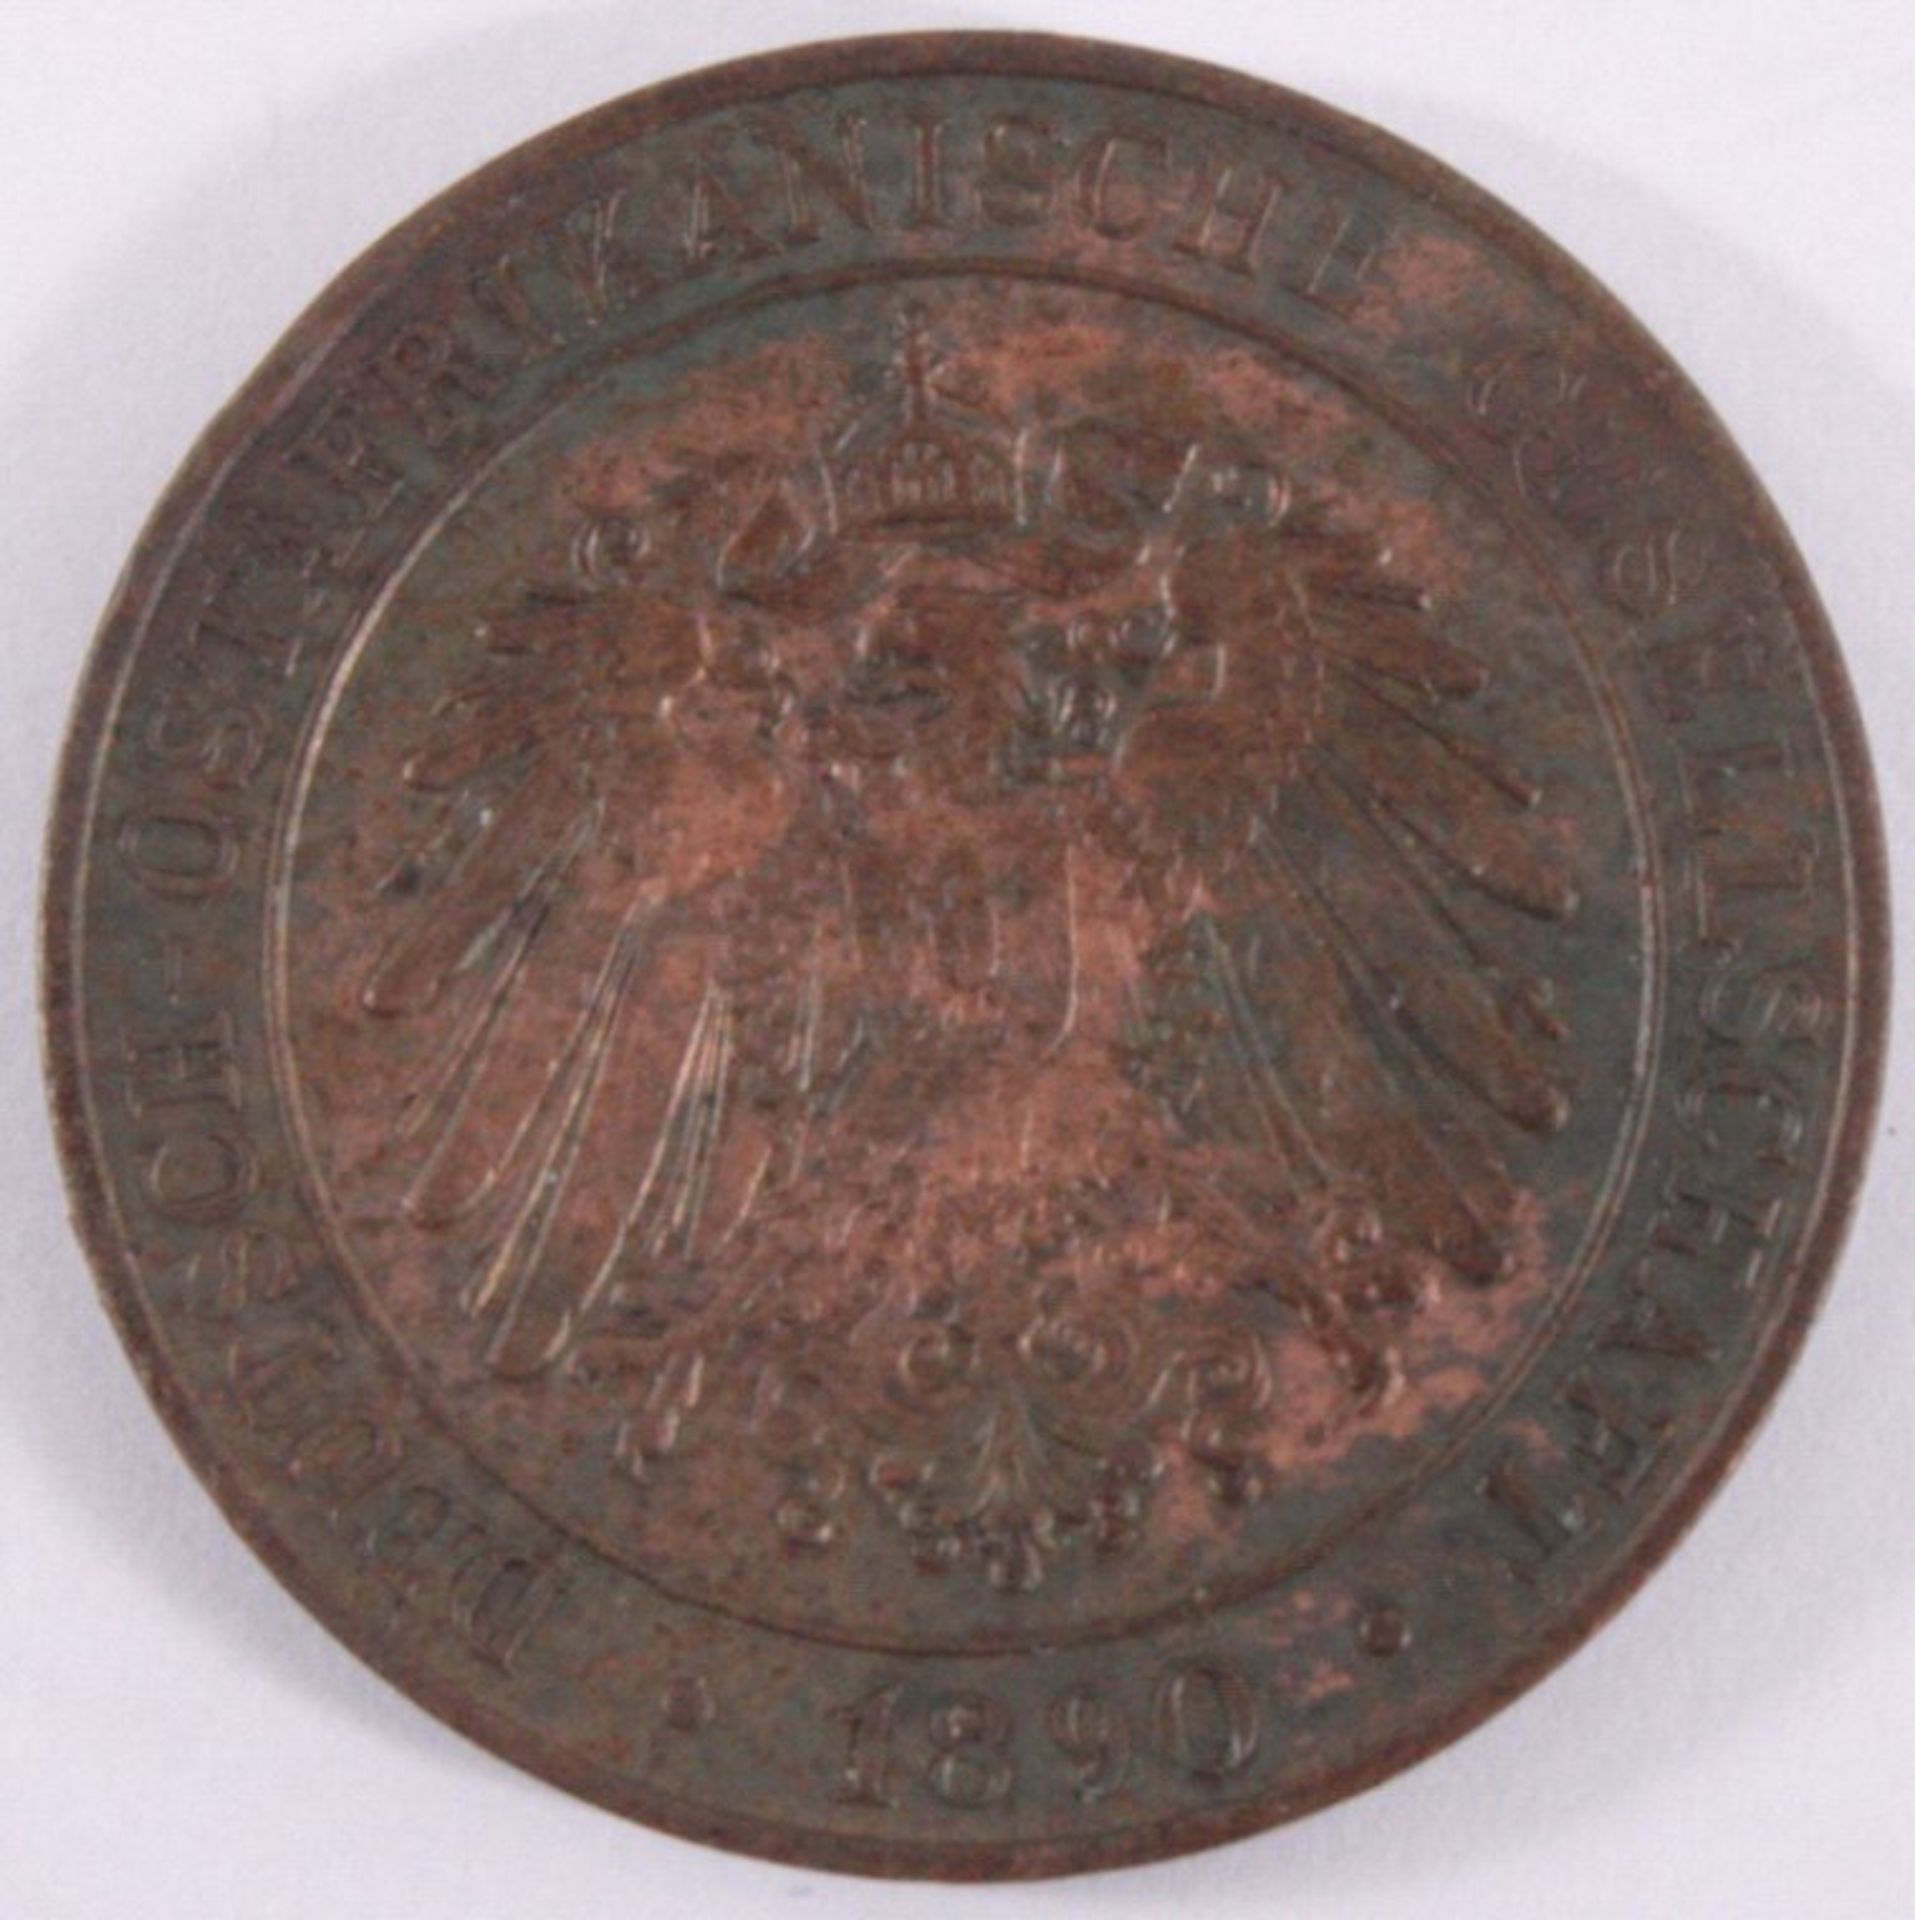 1 Pesa 1890. Deutsch OstafrikaKupfer, 6,52 g, J 710, ss. Mit Münzpaß MDM - Image 2 of 2